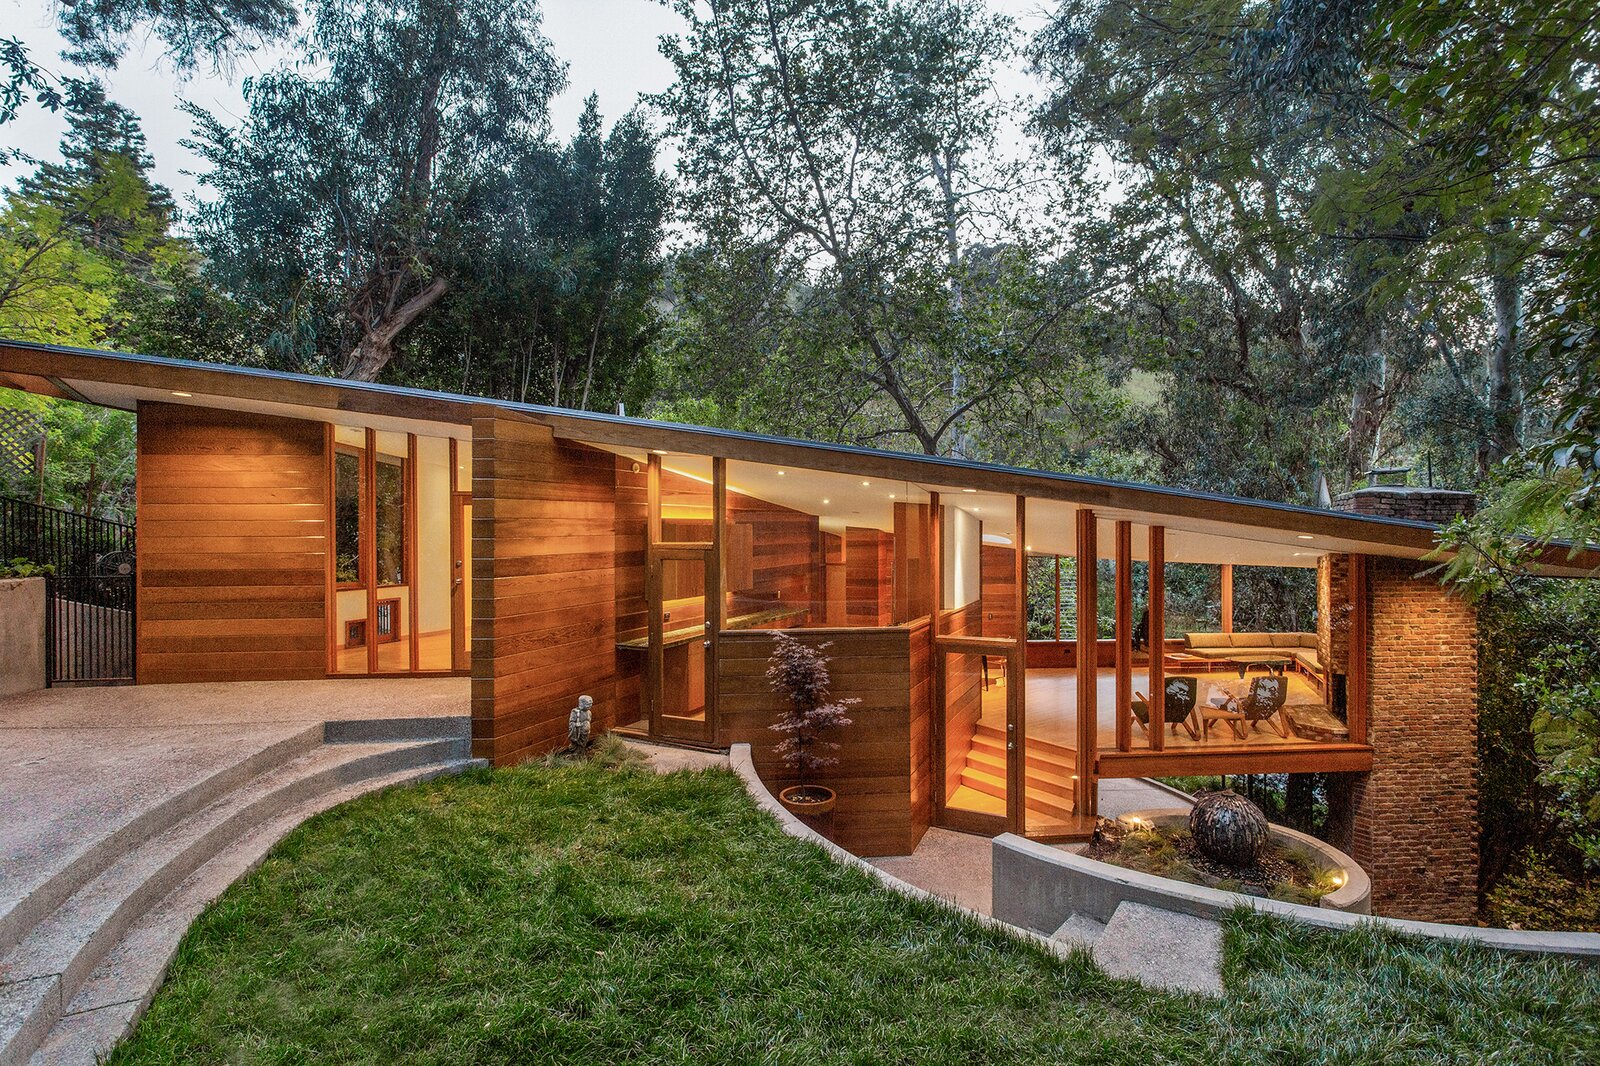 Tyler House, Designed In 1950 By John Lautner. Los Angeles, California